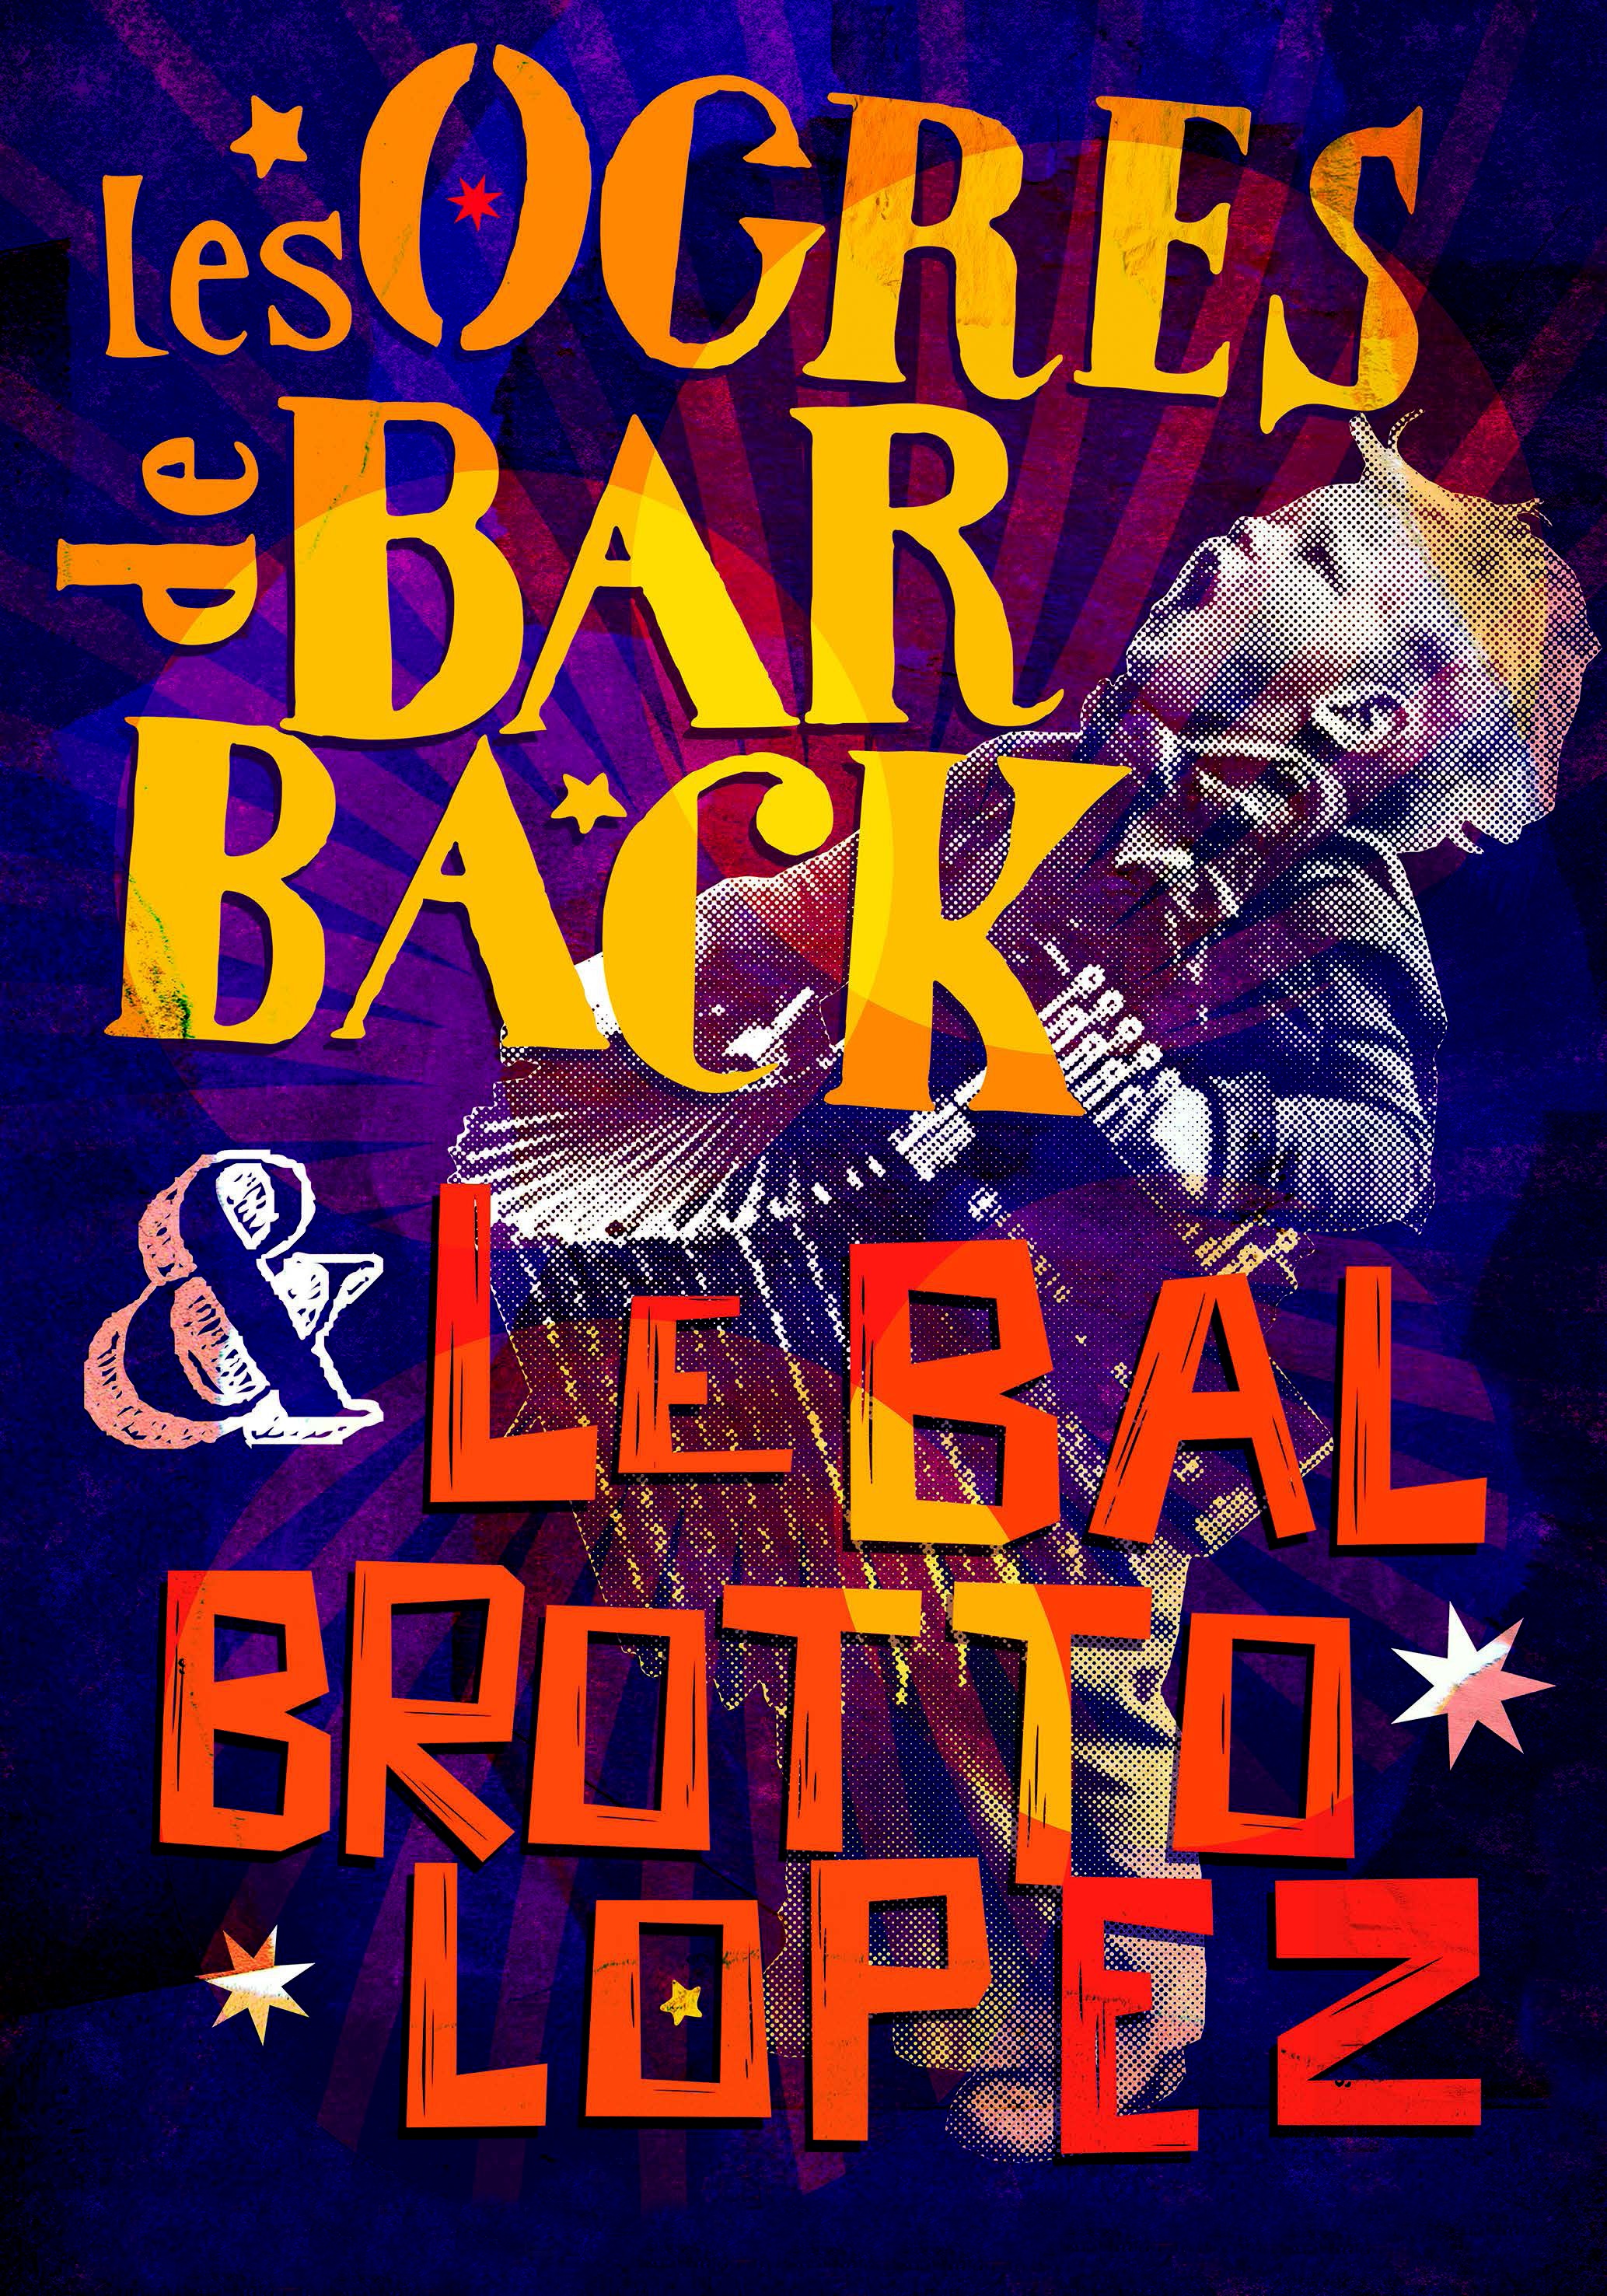 Concert : Les Ogres de Barback et le bal Brotto-Lopez